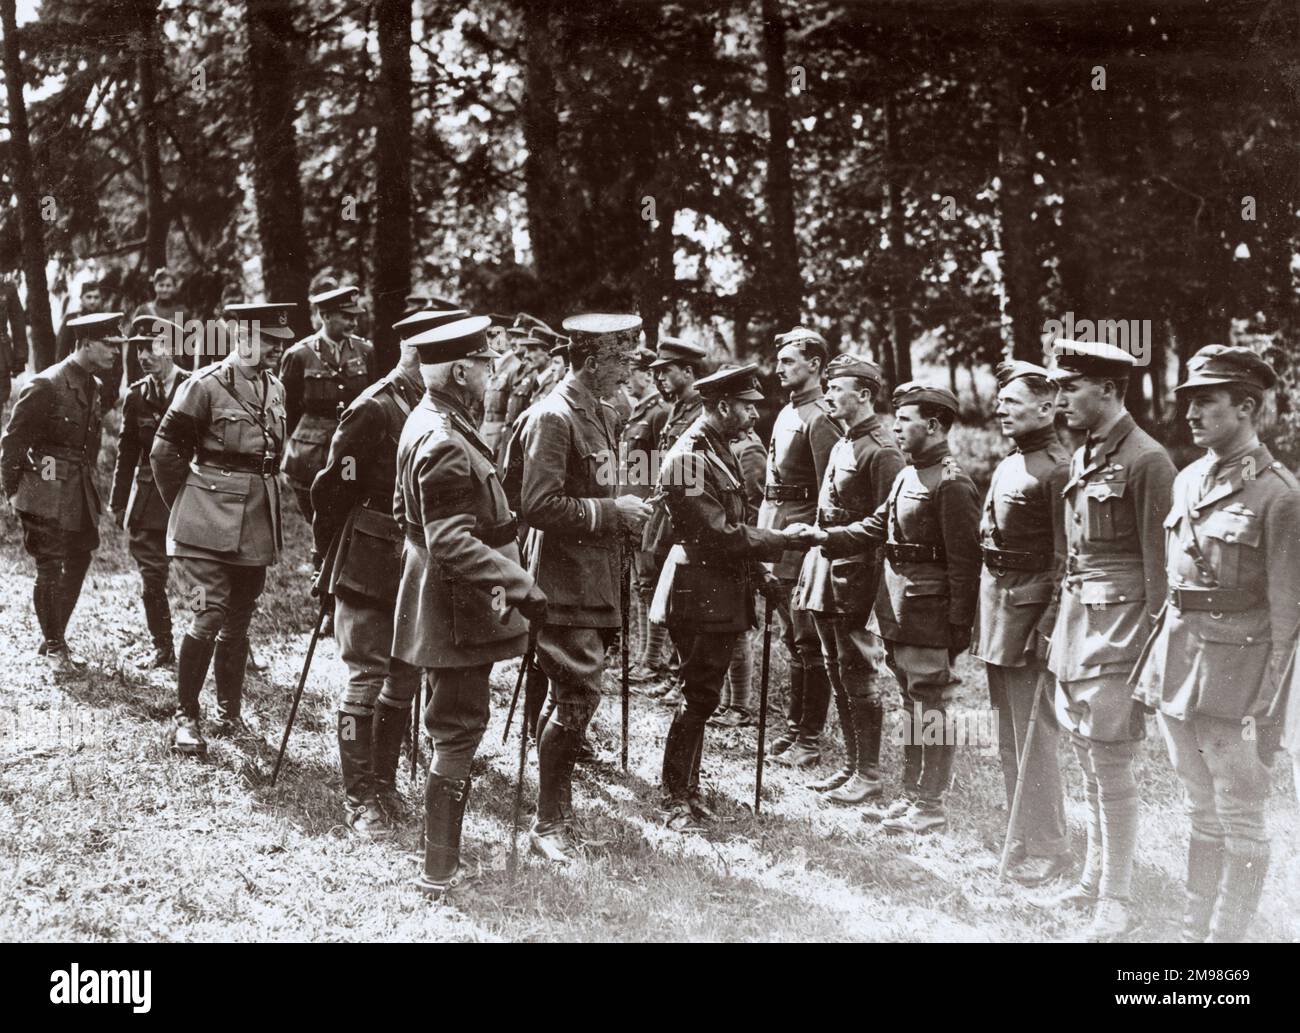 Re Giorgio V ispezionando i piloti della RAF sul fronte occidentale in Francia durante la prima guerra mondiale, agosto 1918. Il generale Herbert Plumer (soprannominato Old Plum) è visibile sulla sinistra. Gli uomini appartenevano a 53 Squadron, che comprendeva Harold Auerbach. Foto Stock